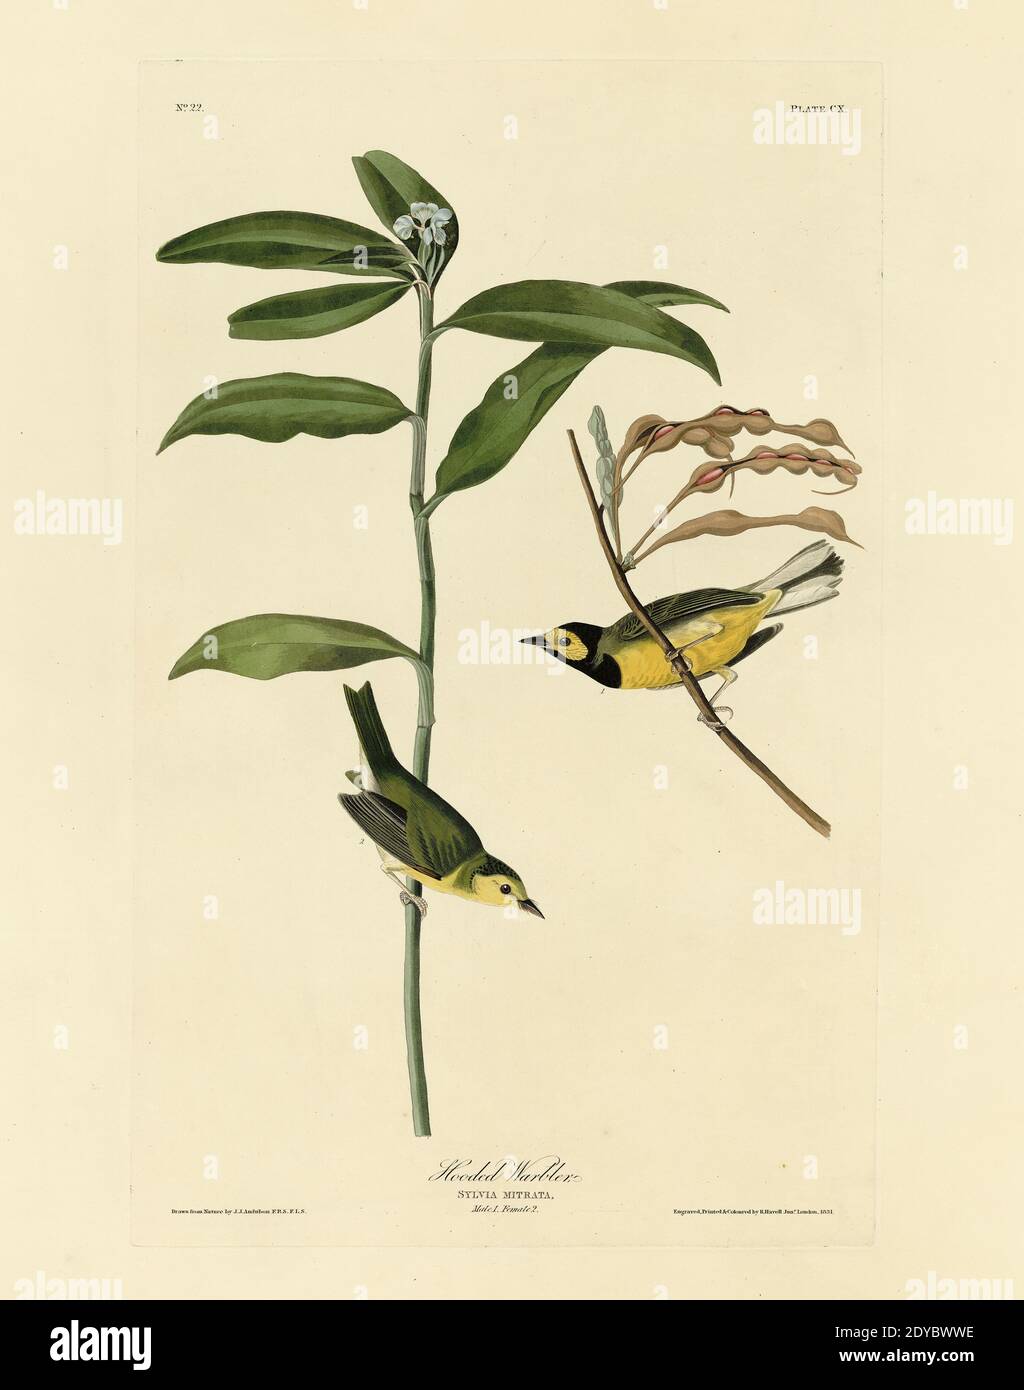 Plate 110 Hooded Warbler, from the Birds of America folio (1827–1839) di John James Audubon - immagine modificata di altissima risoluzione e qualità Foto Stock